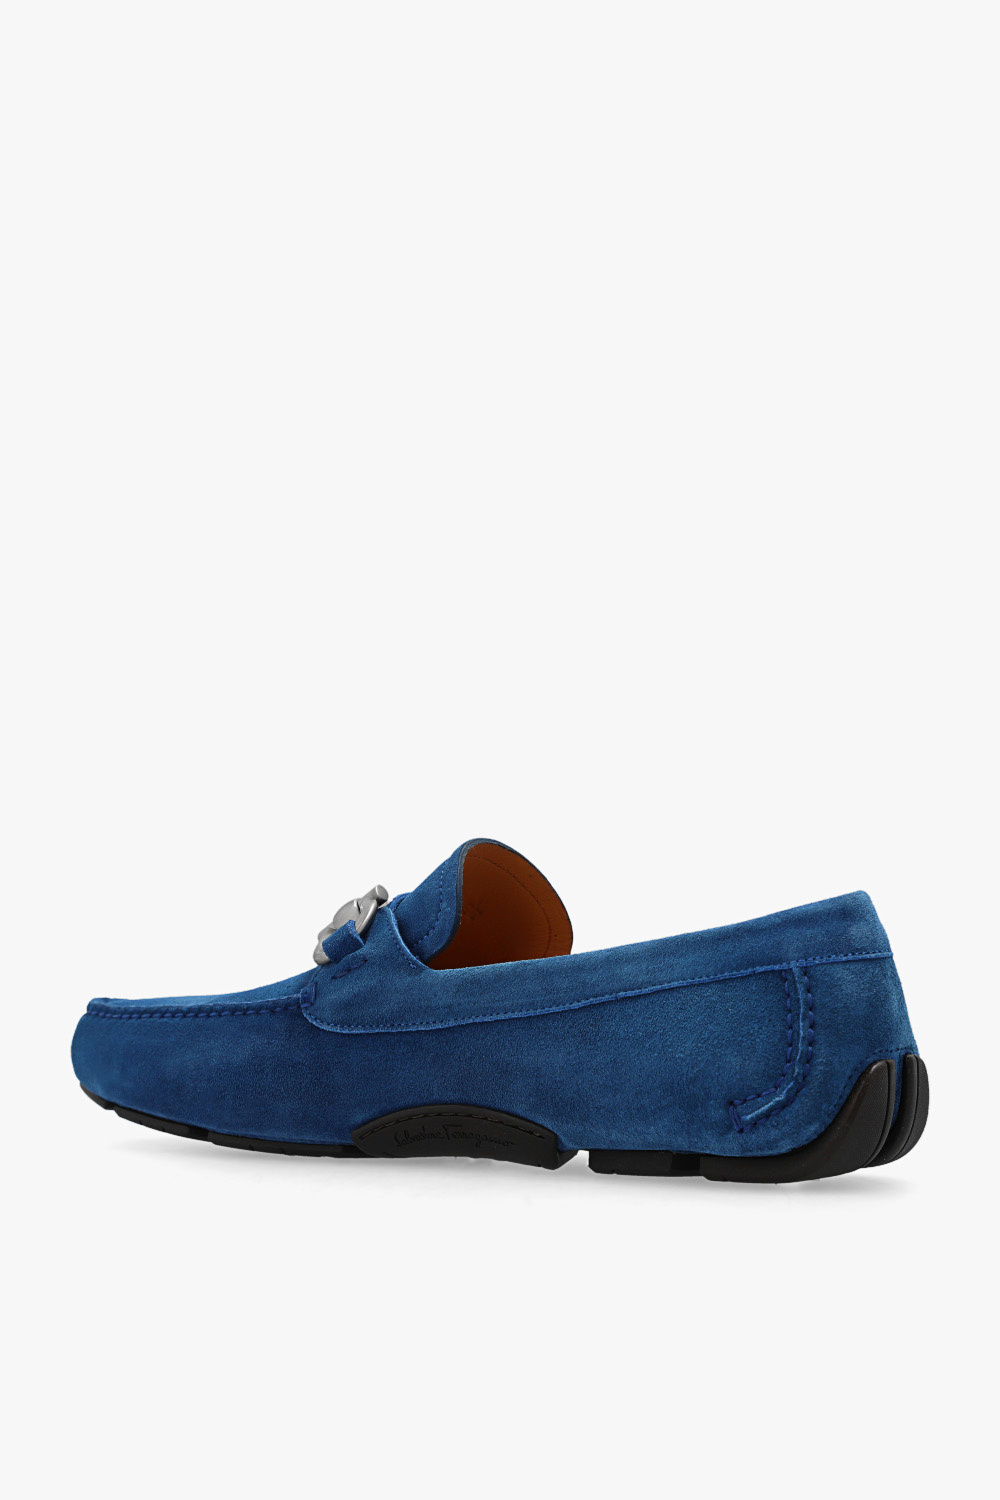 Salvatore Ferragamo ‘Parigi’ leather Gardening shoes